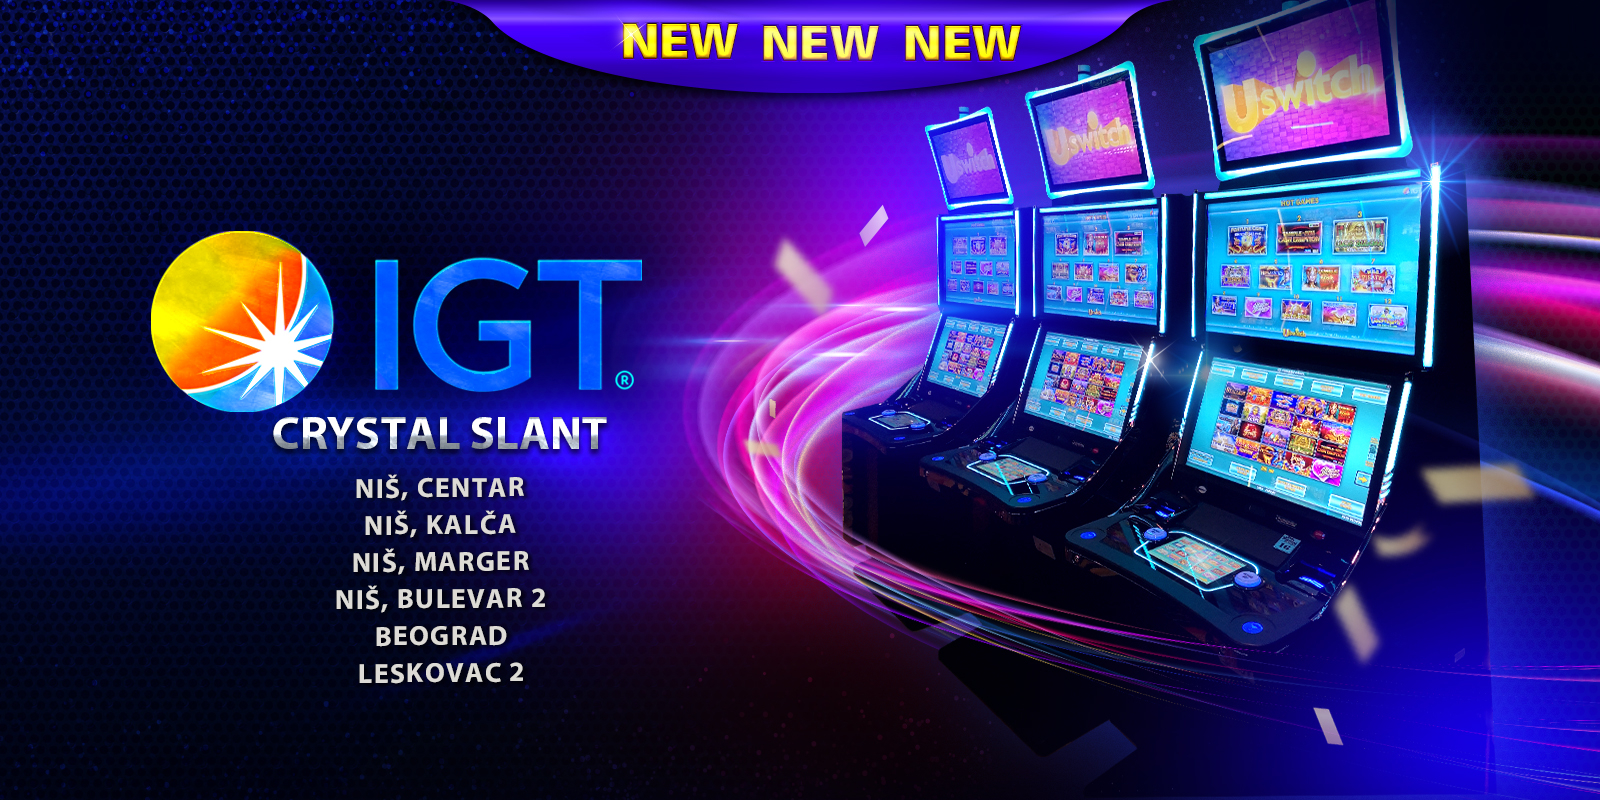 IGT CrystalSlant od sada u Spin kazinu